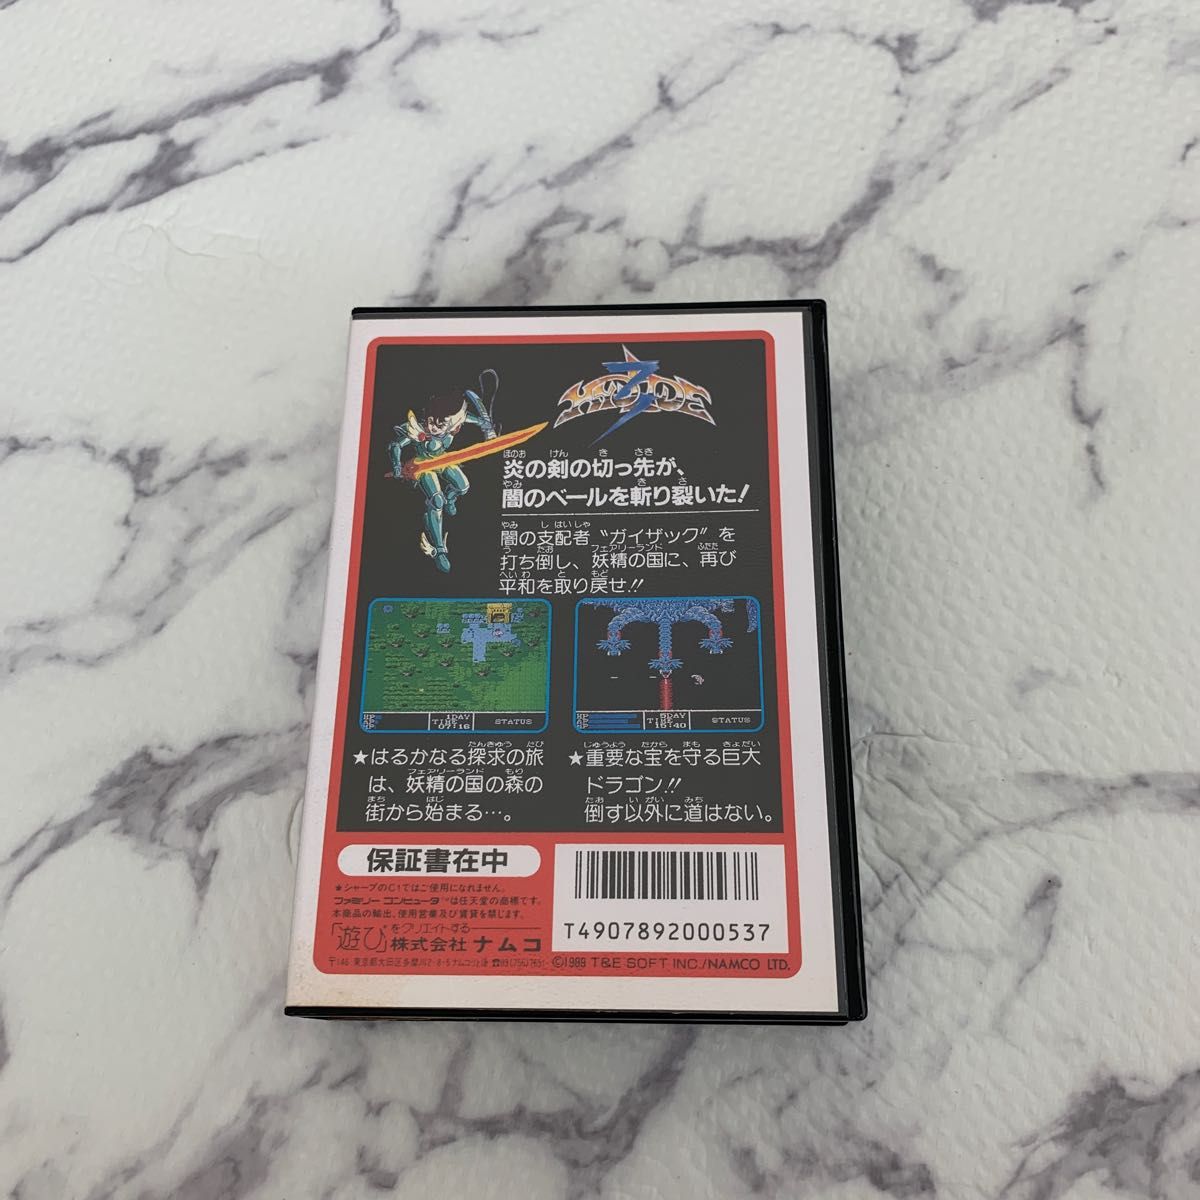 ナムコ ケルナグール ソフト ドラゴンバスター Nintendo ファミコンソフト ハイドライド3 任天堂